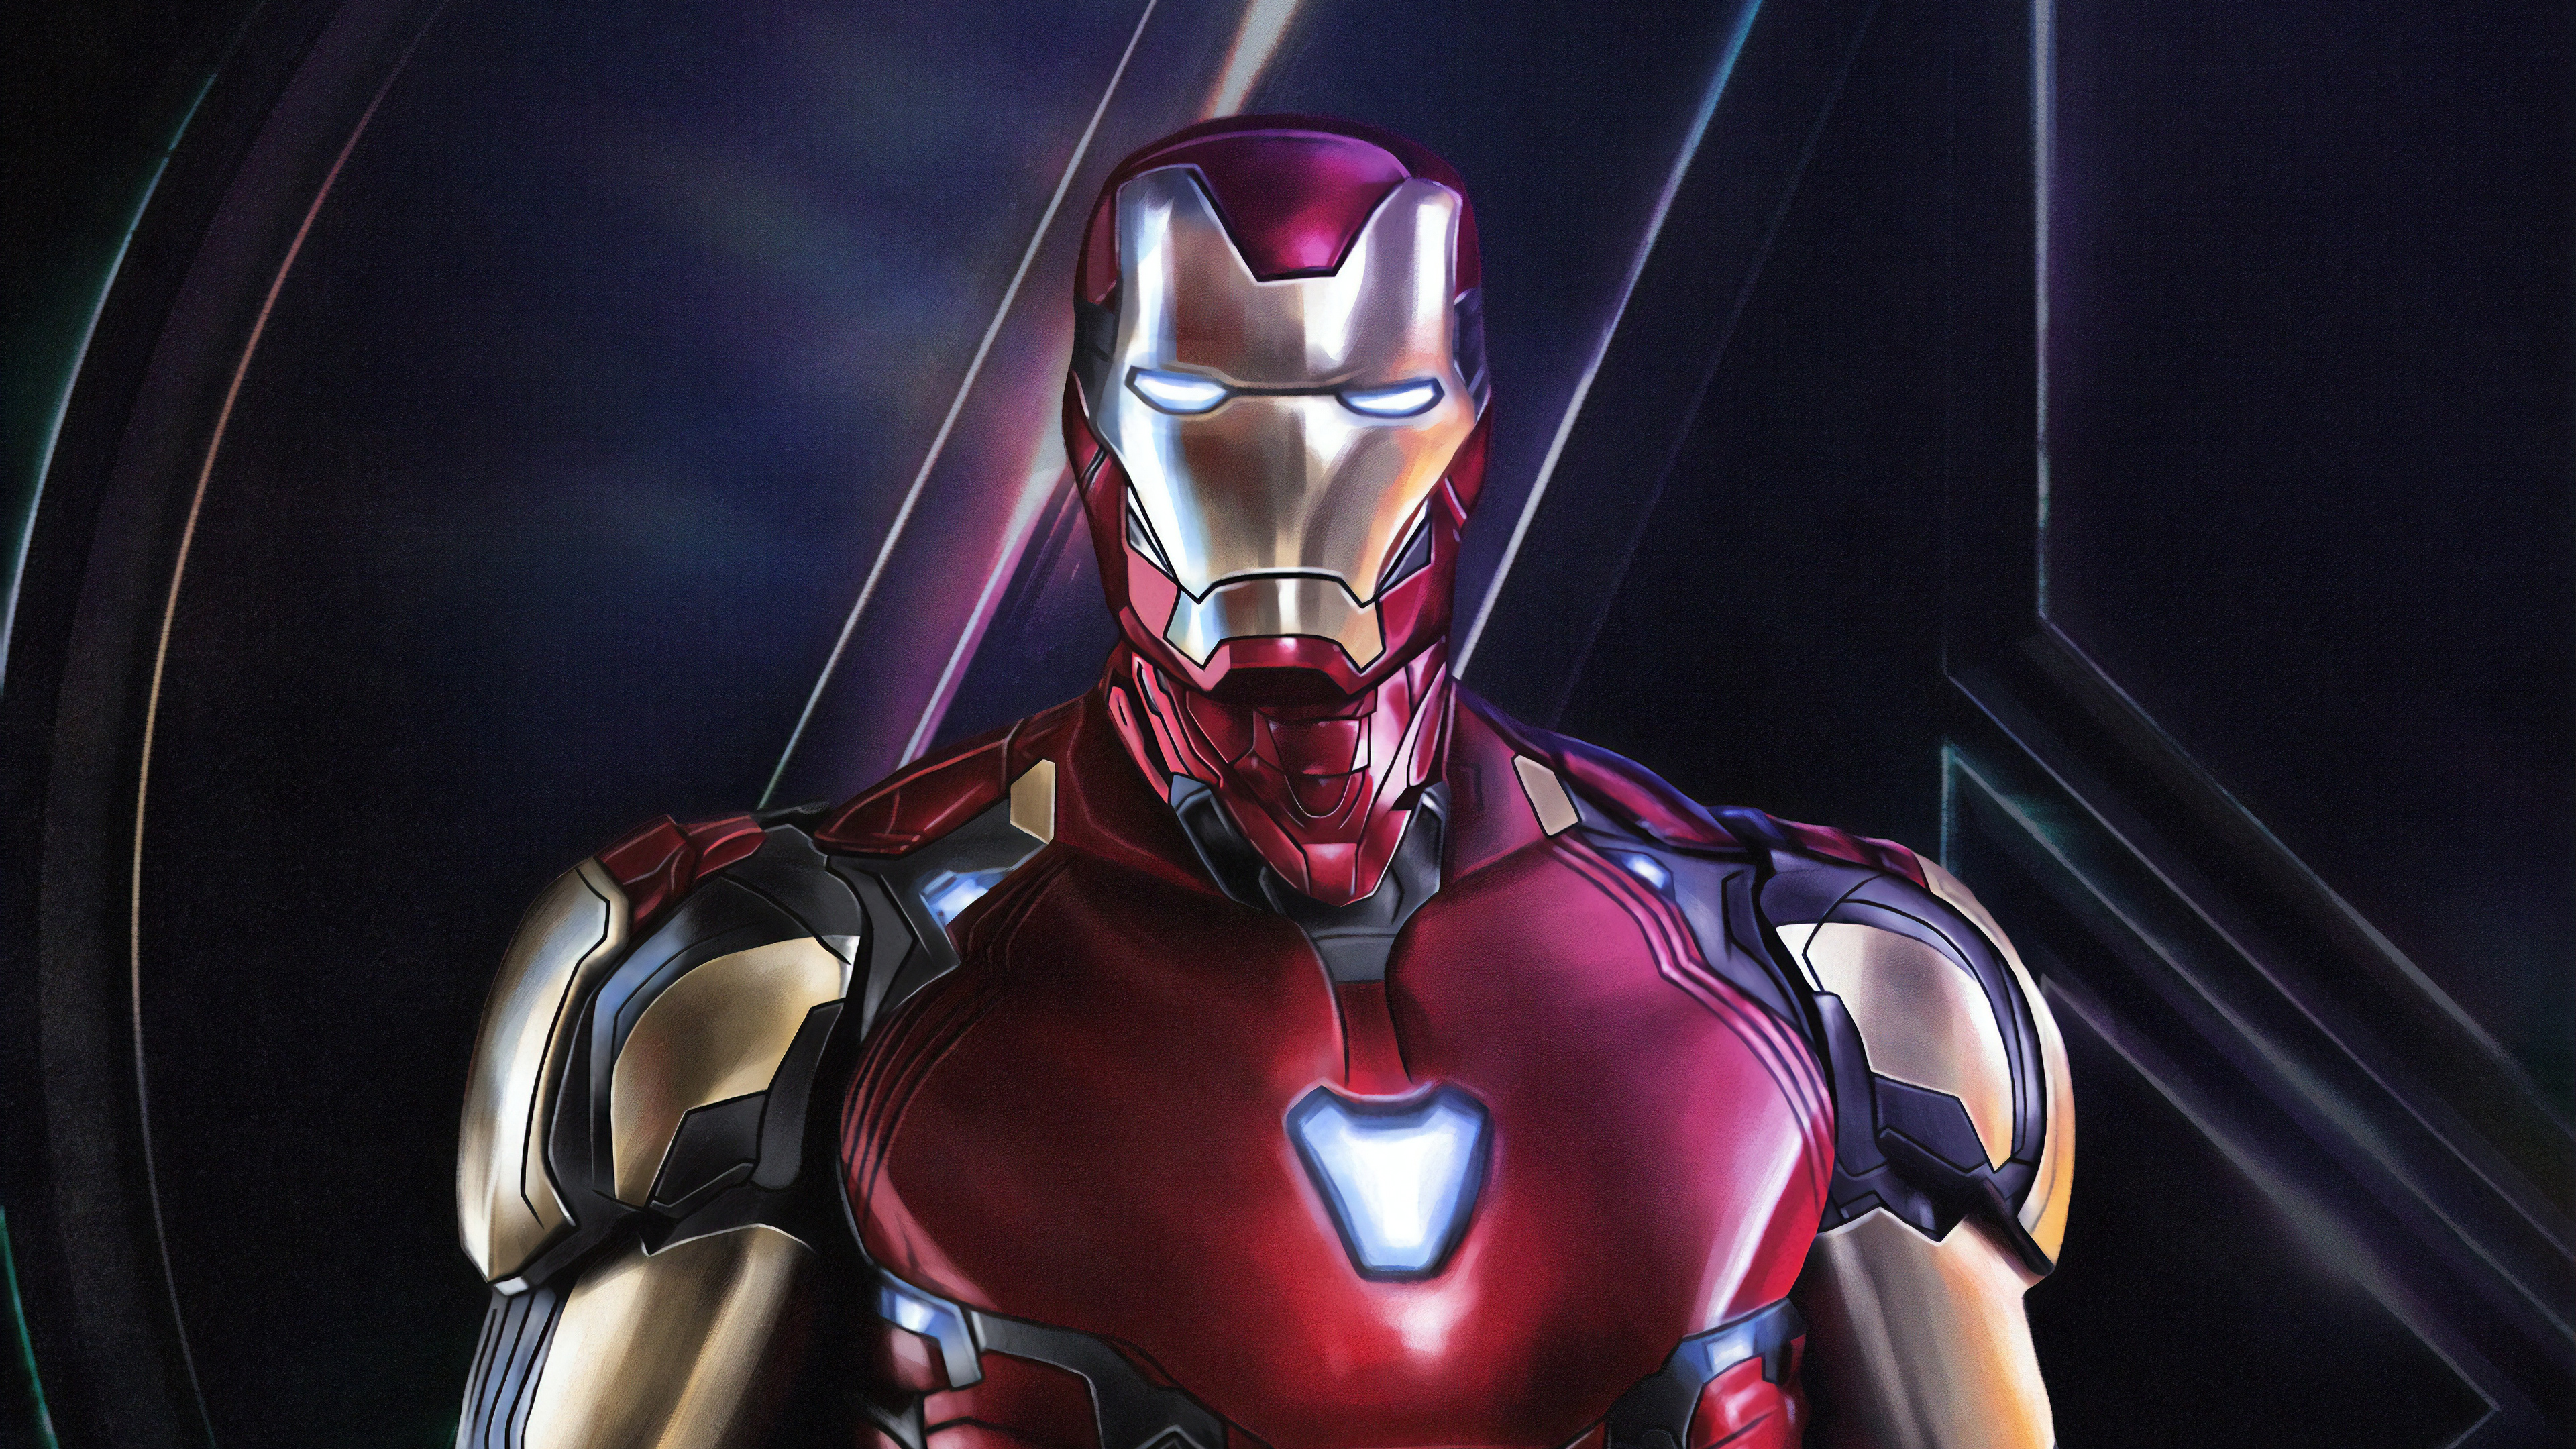 4k Iron Man Avengers Endgame, HD Superheroes, 4k ...